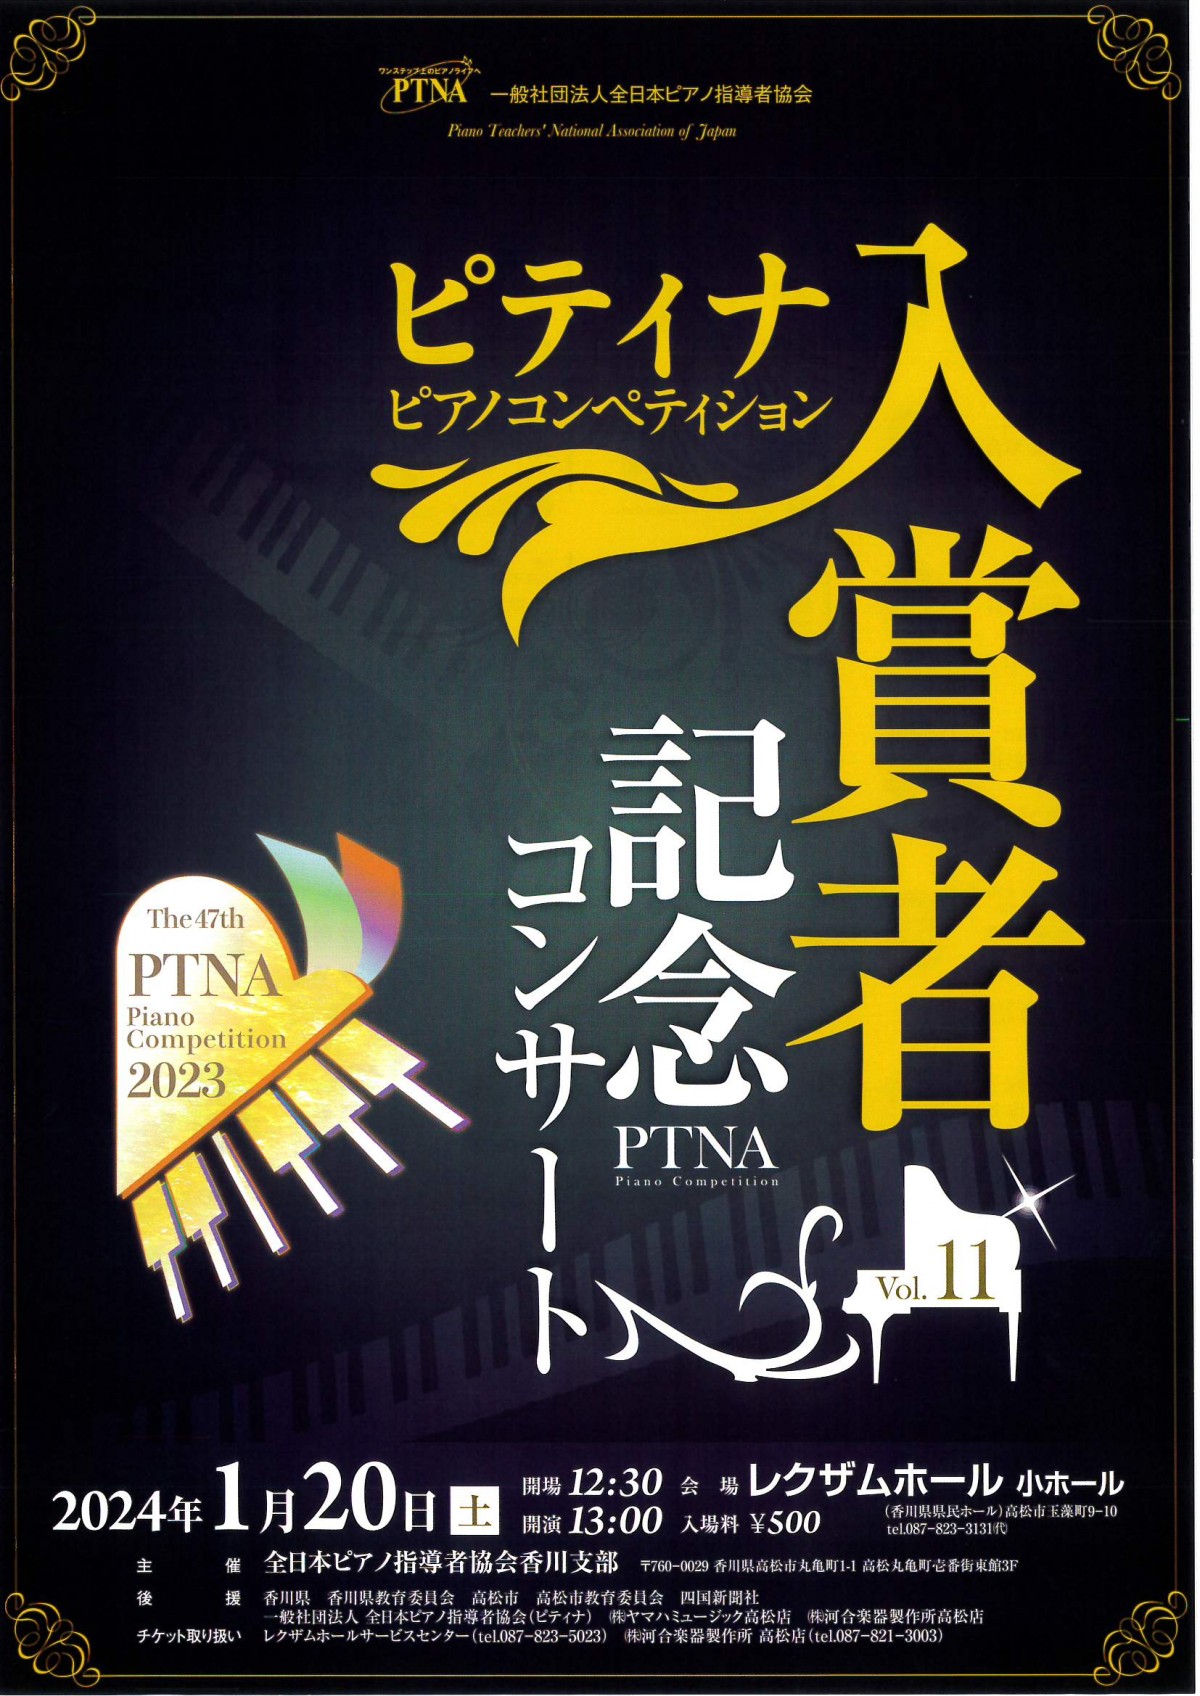 ピティナ・ピアノコンペティション入賞者記念コンサート